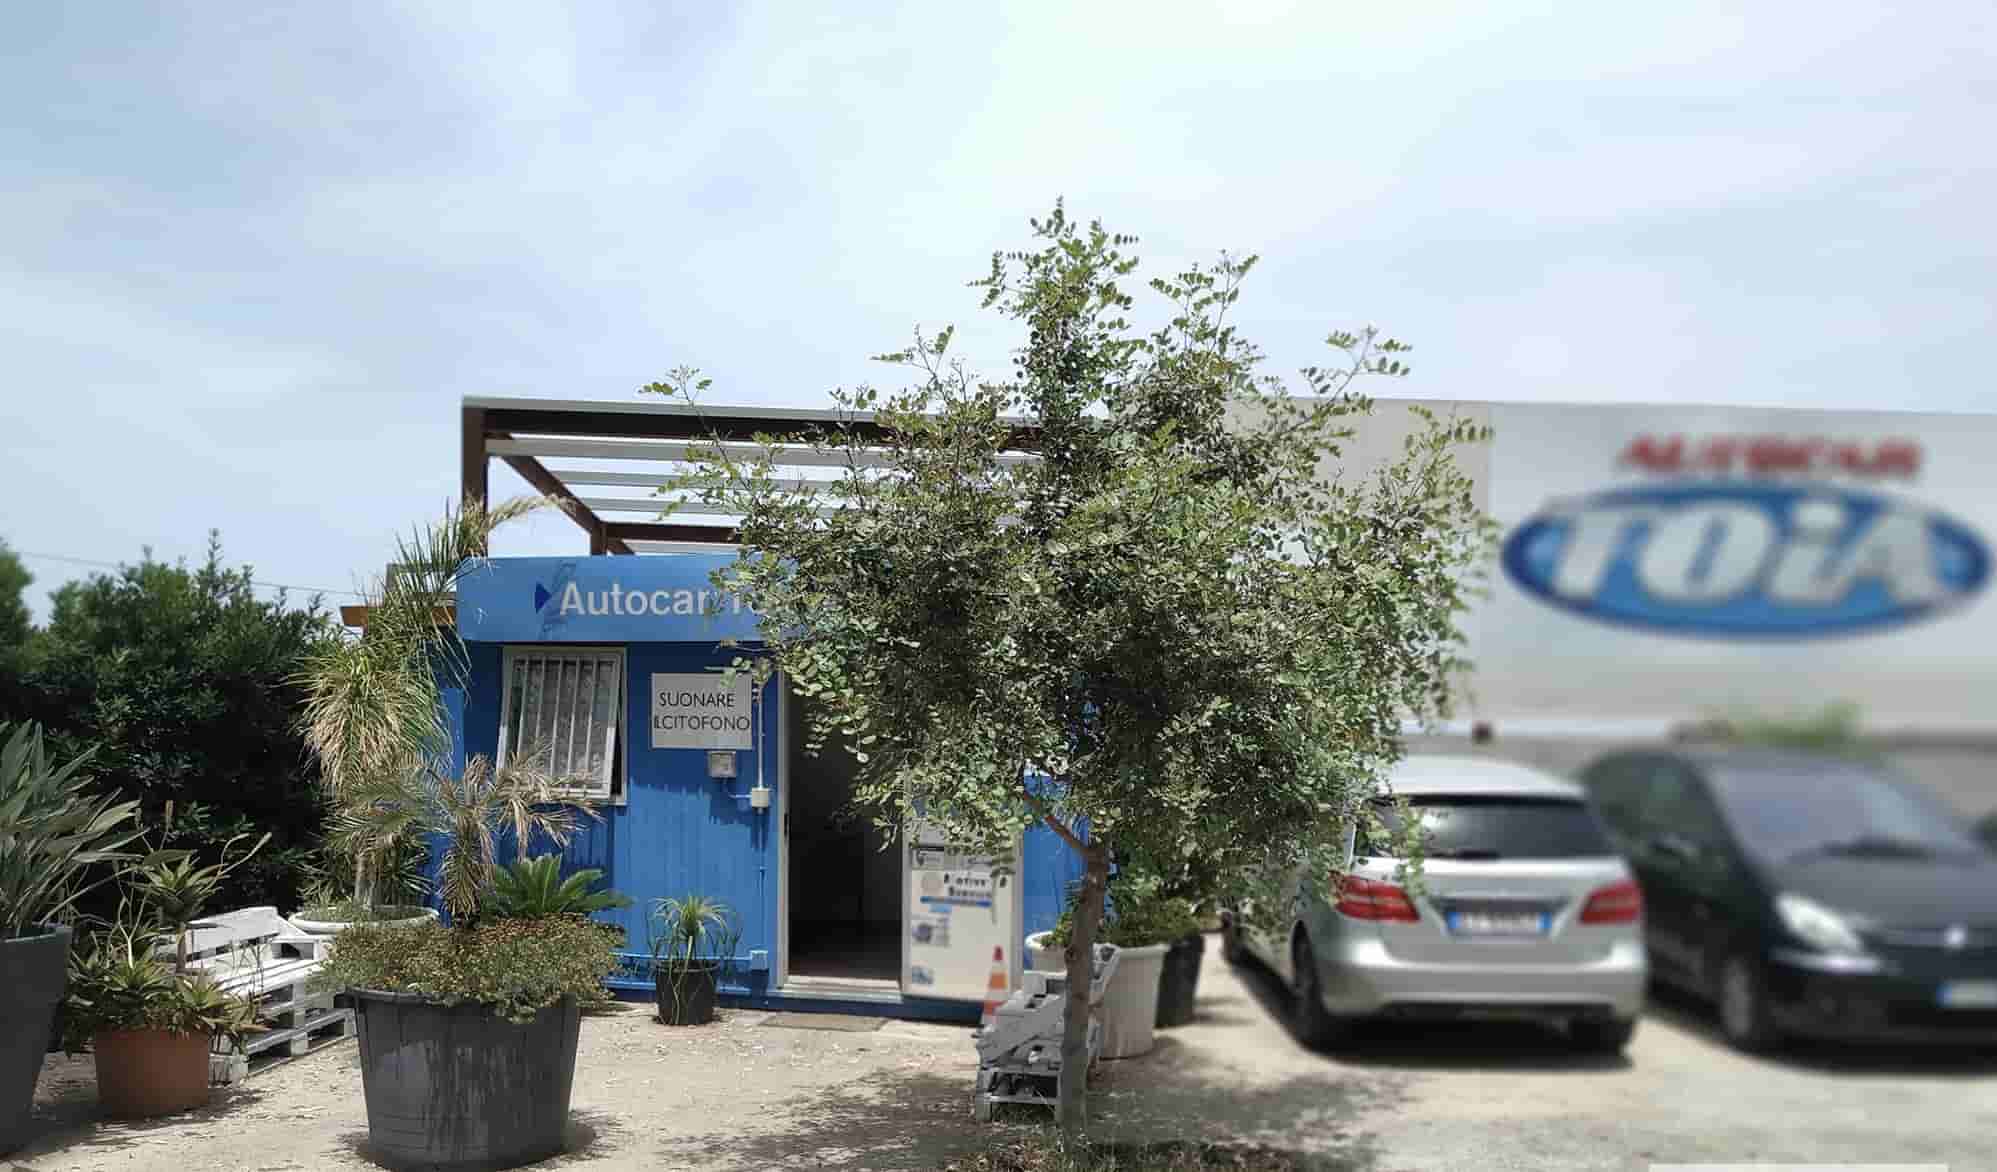 Posti auto scoperti Autocar Toia - Aeroporto Palermo